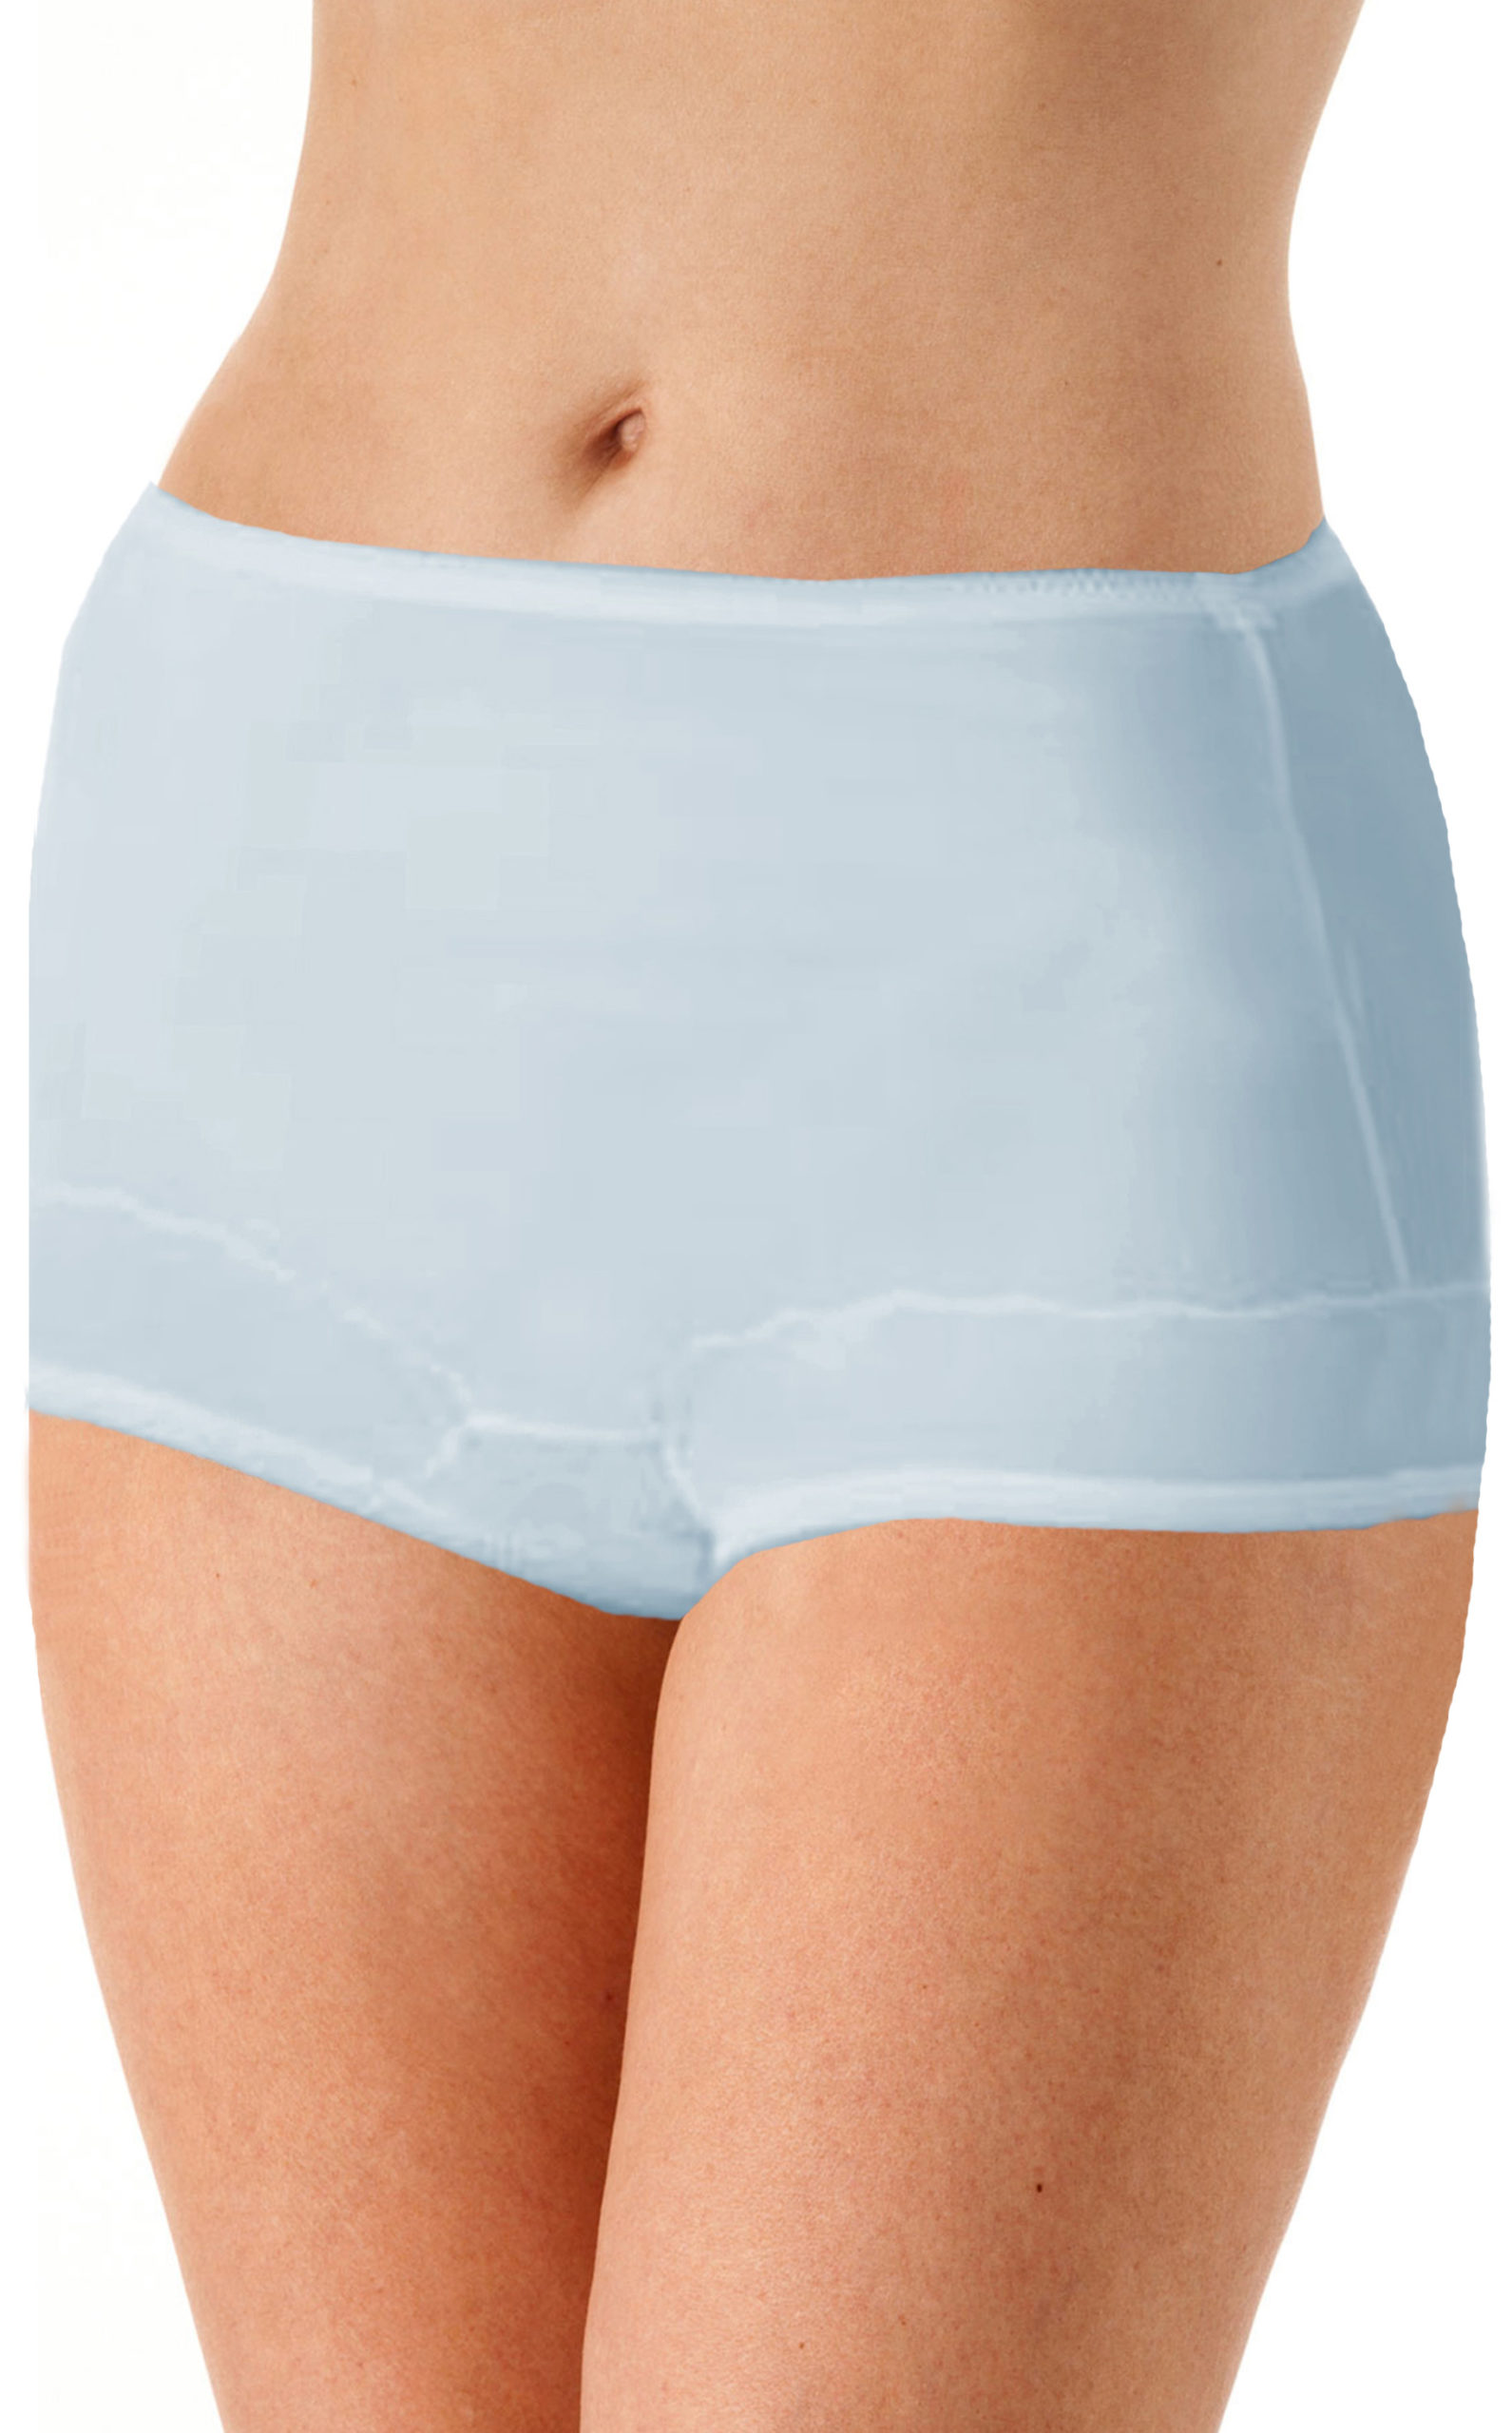  Comfort Choice Womens Plus Size Cotton Brief 10-Pack  Underwear - 11